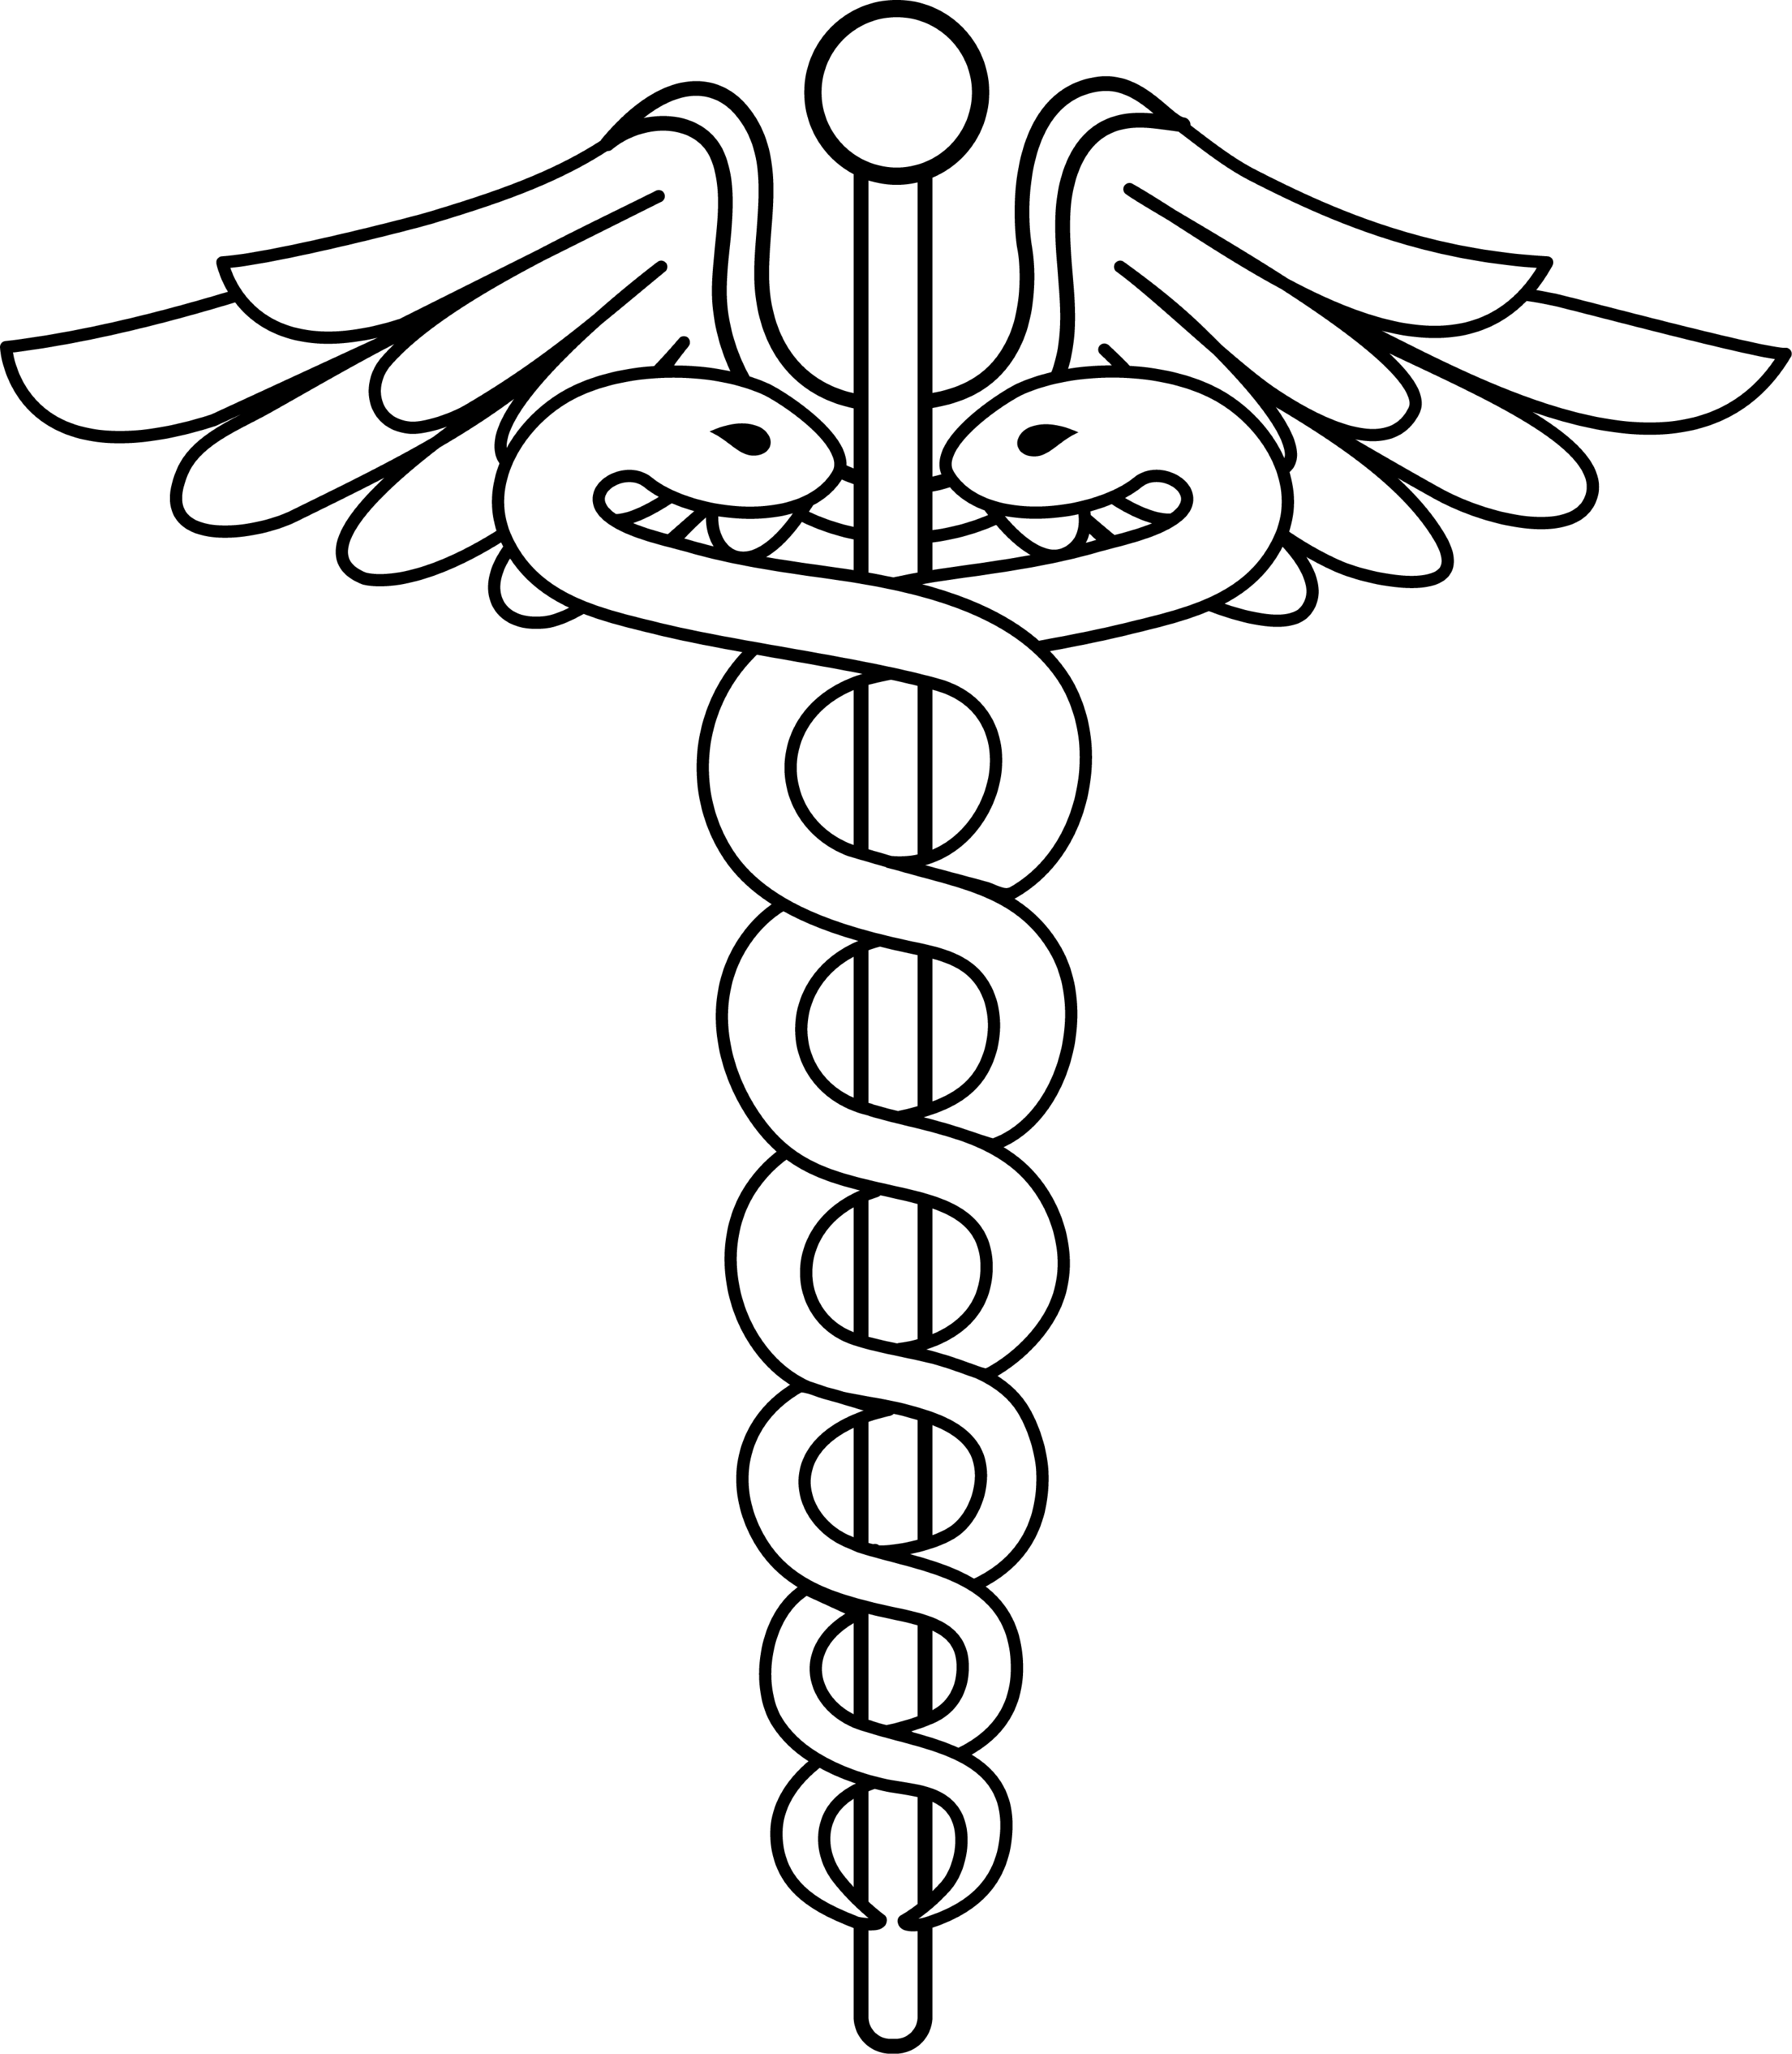 doctor logo clip art - photo #13